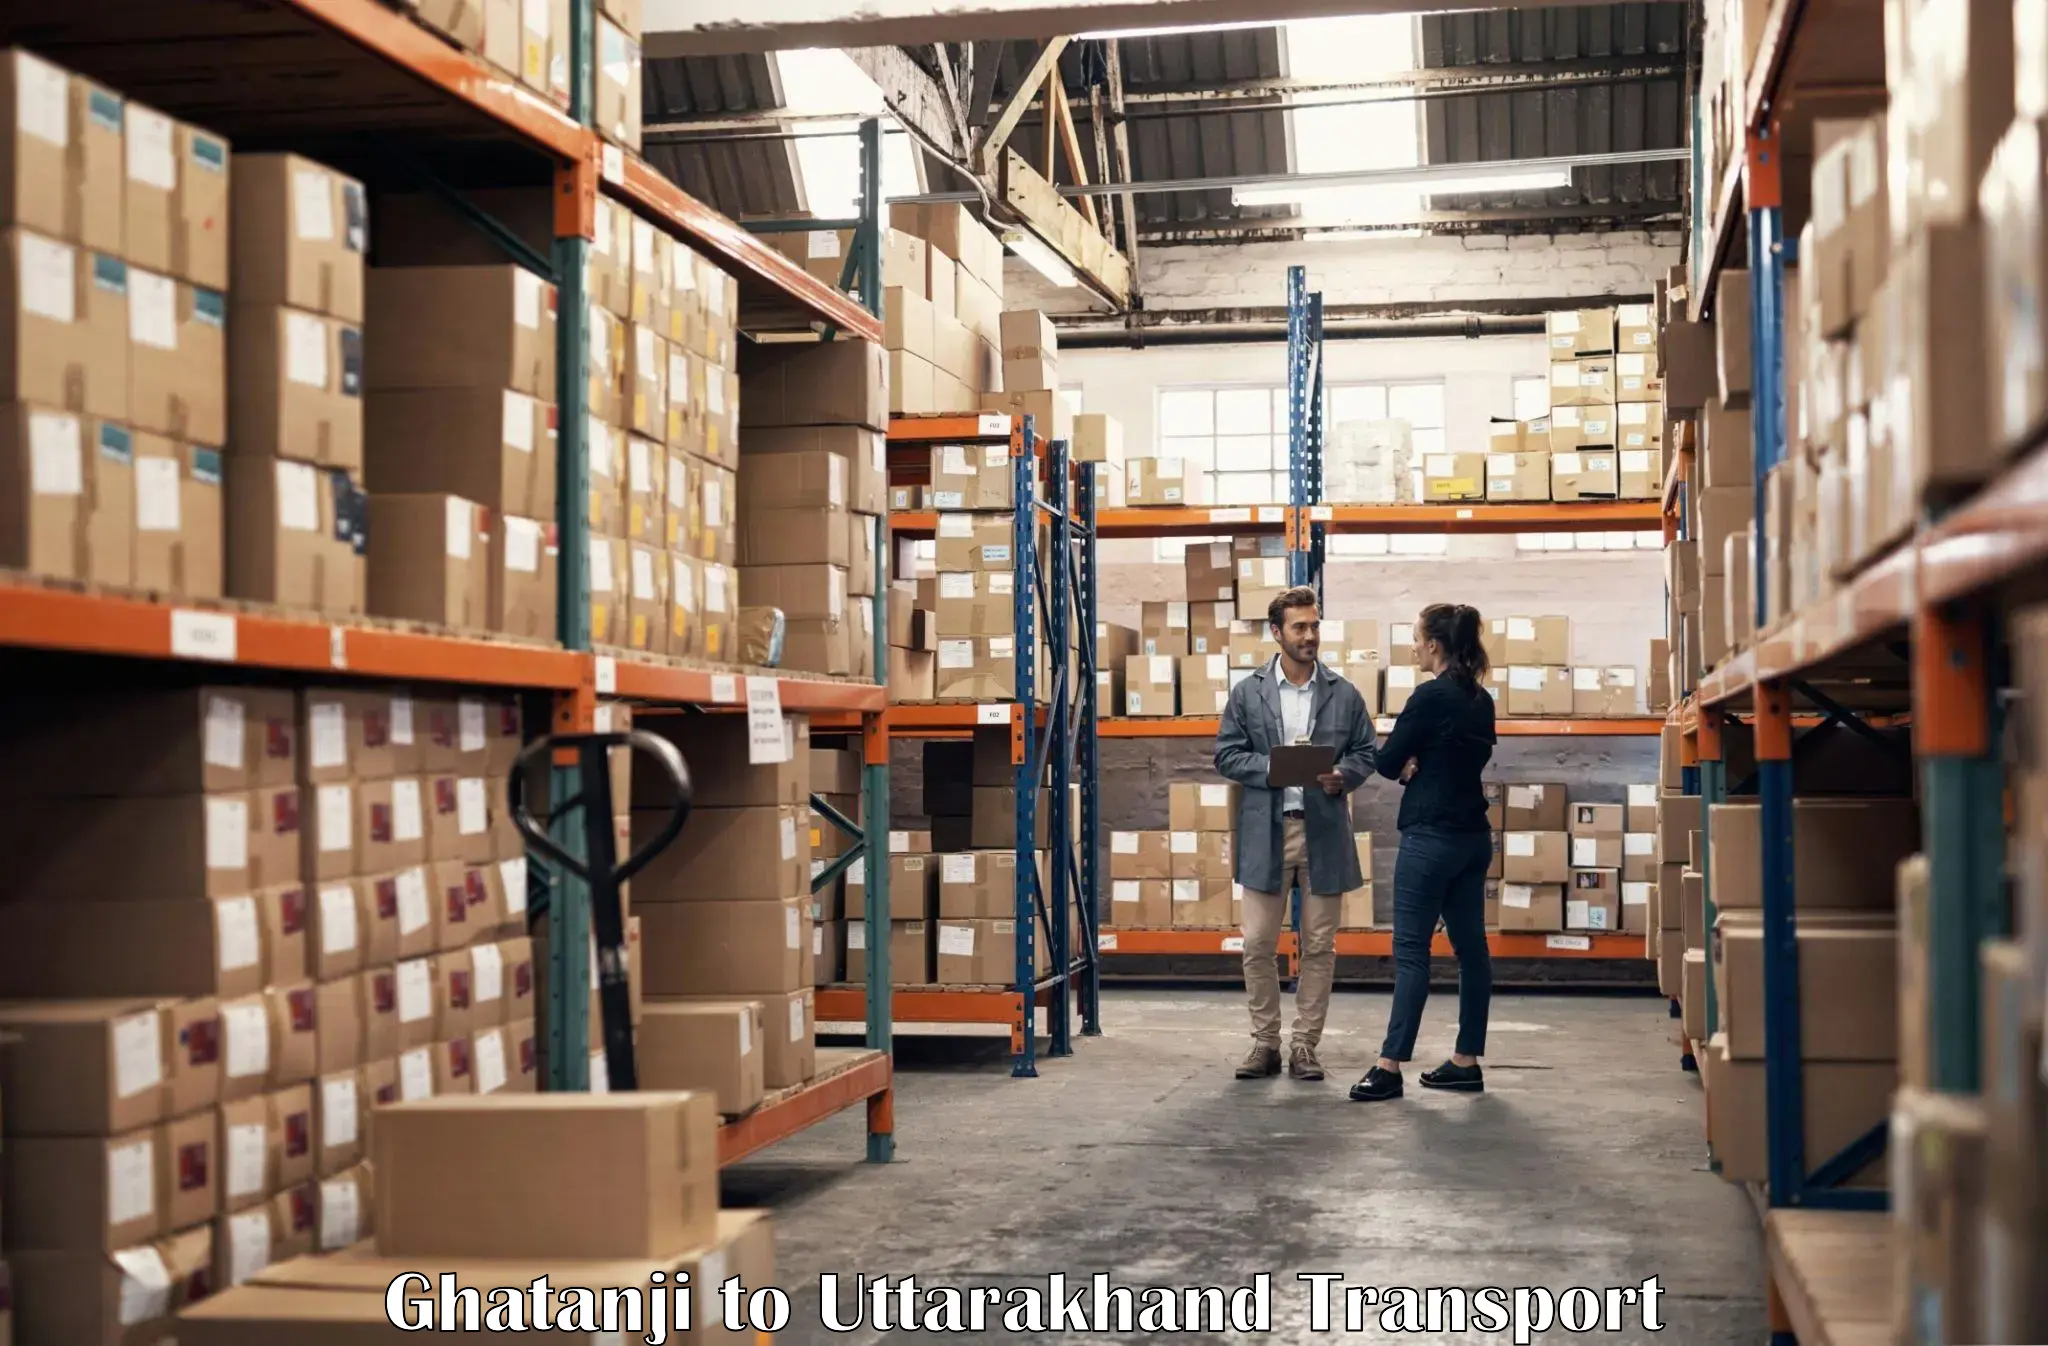 Shipping partner Ghatanji to Uttarakhand